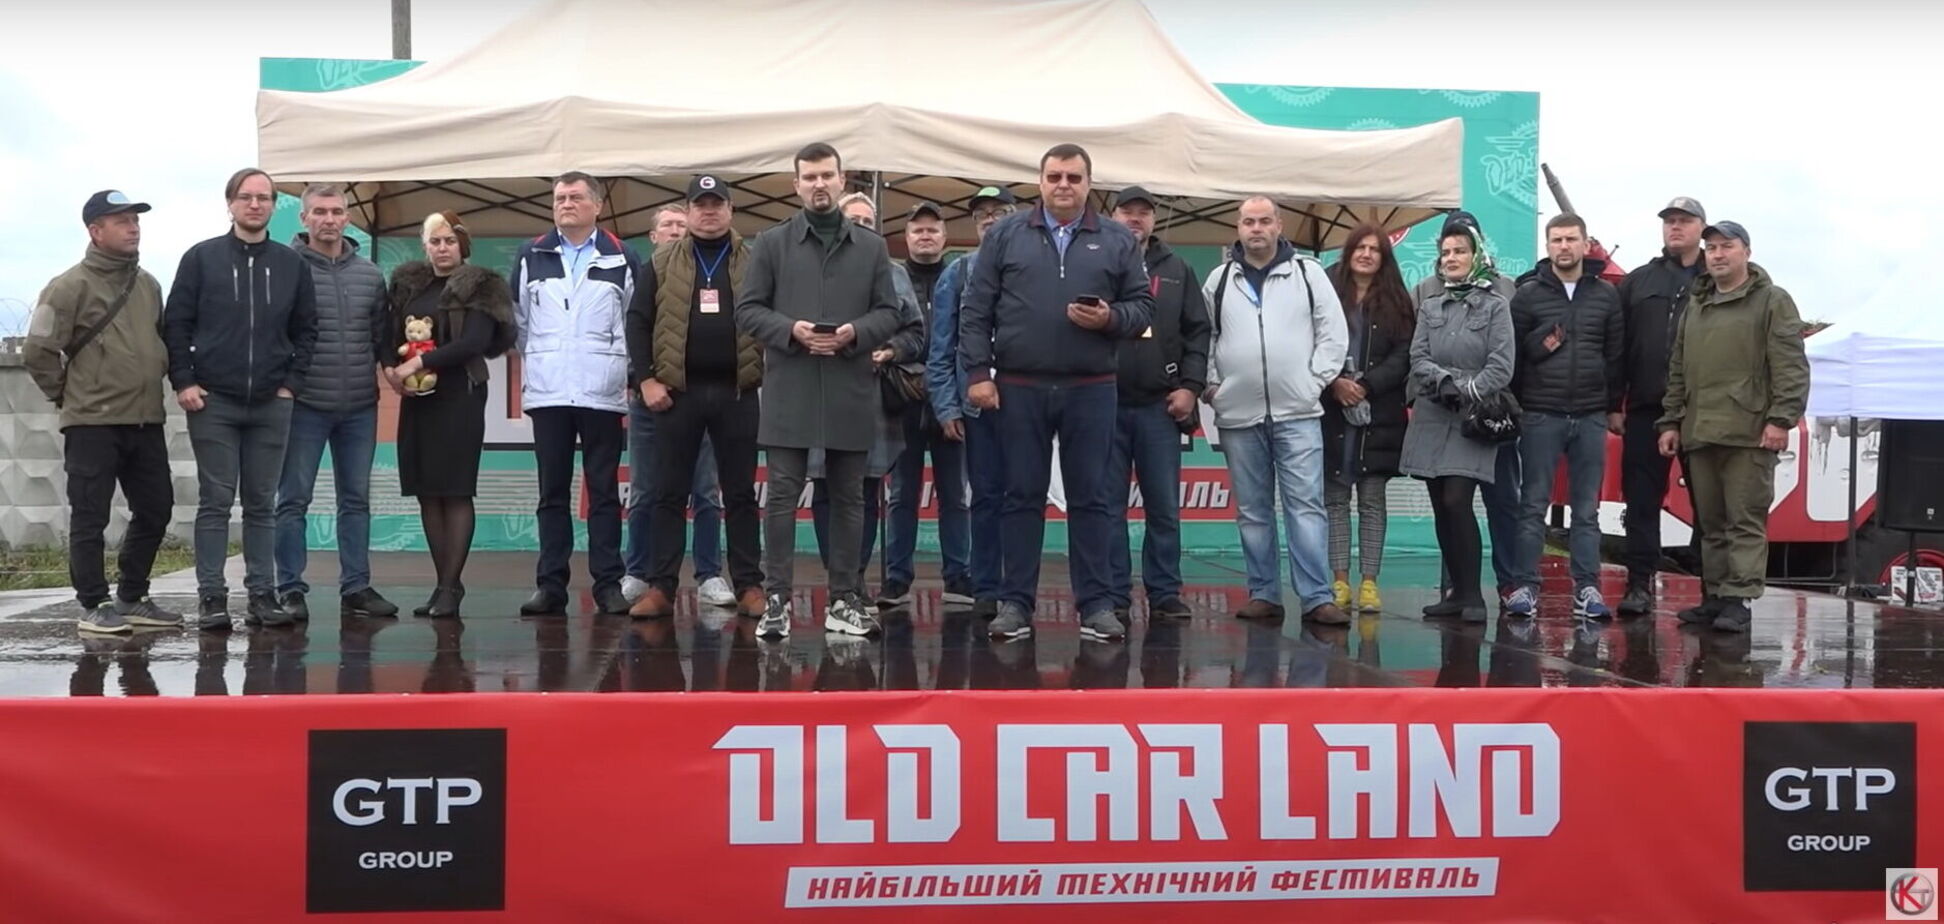 Украинские поклонники ретро техники записали обращение к руководству страны